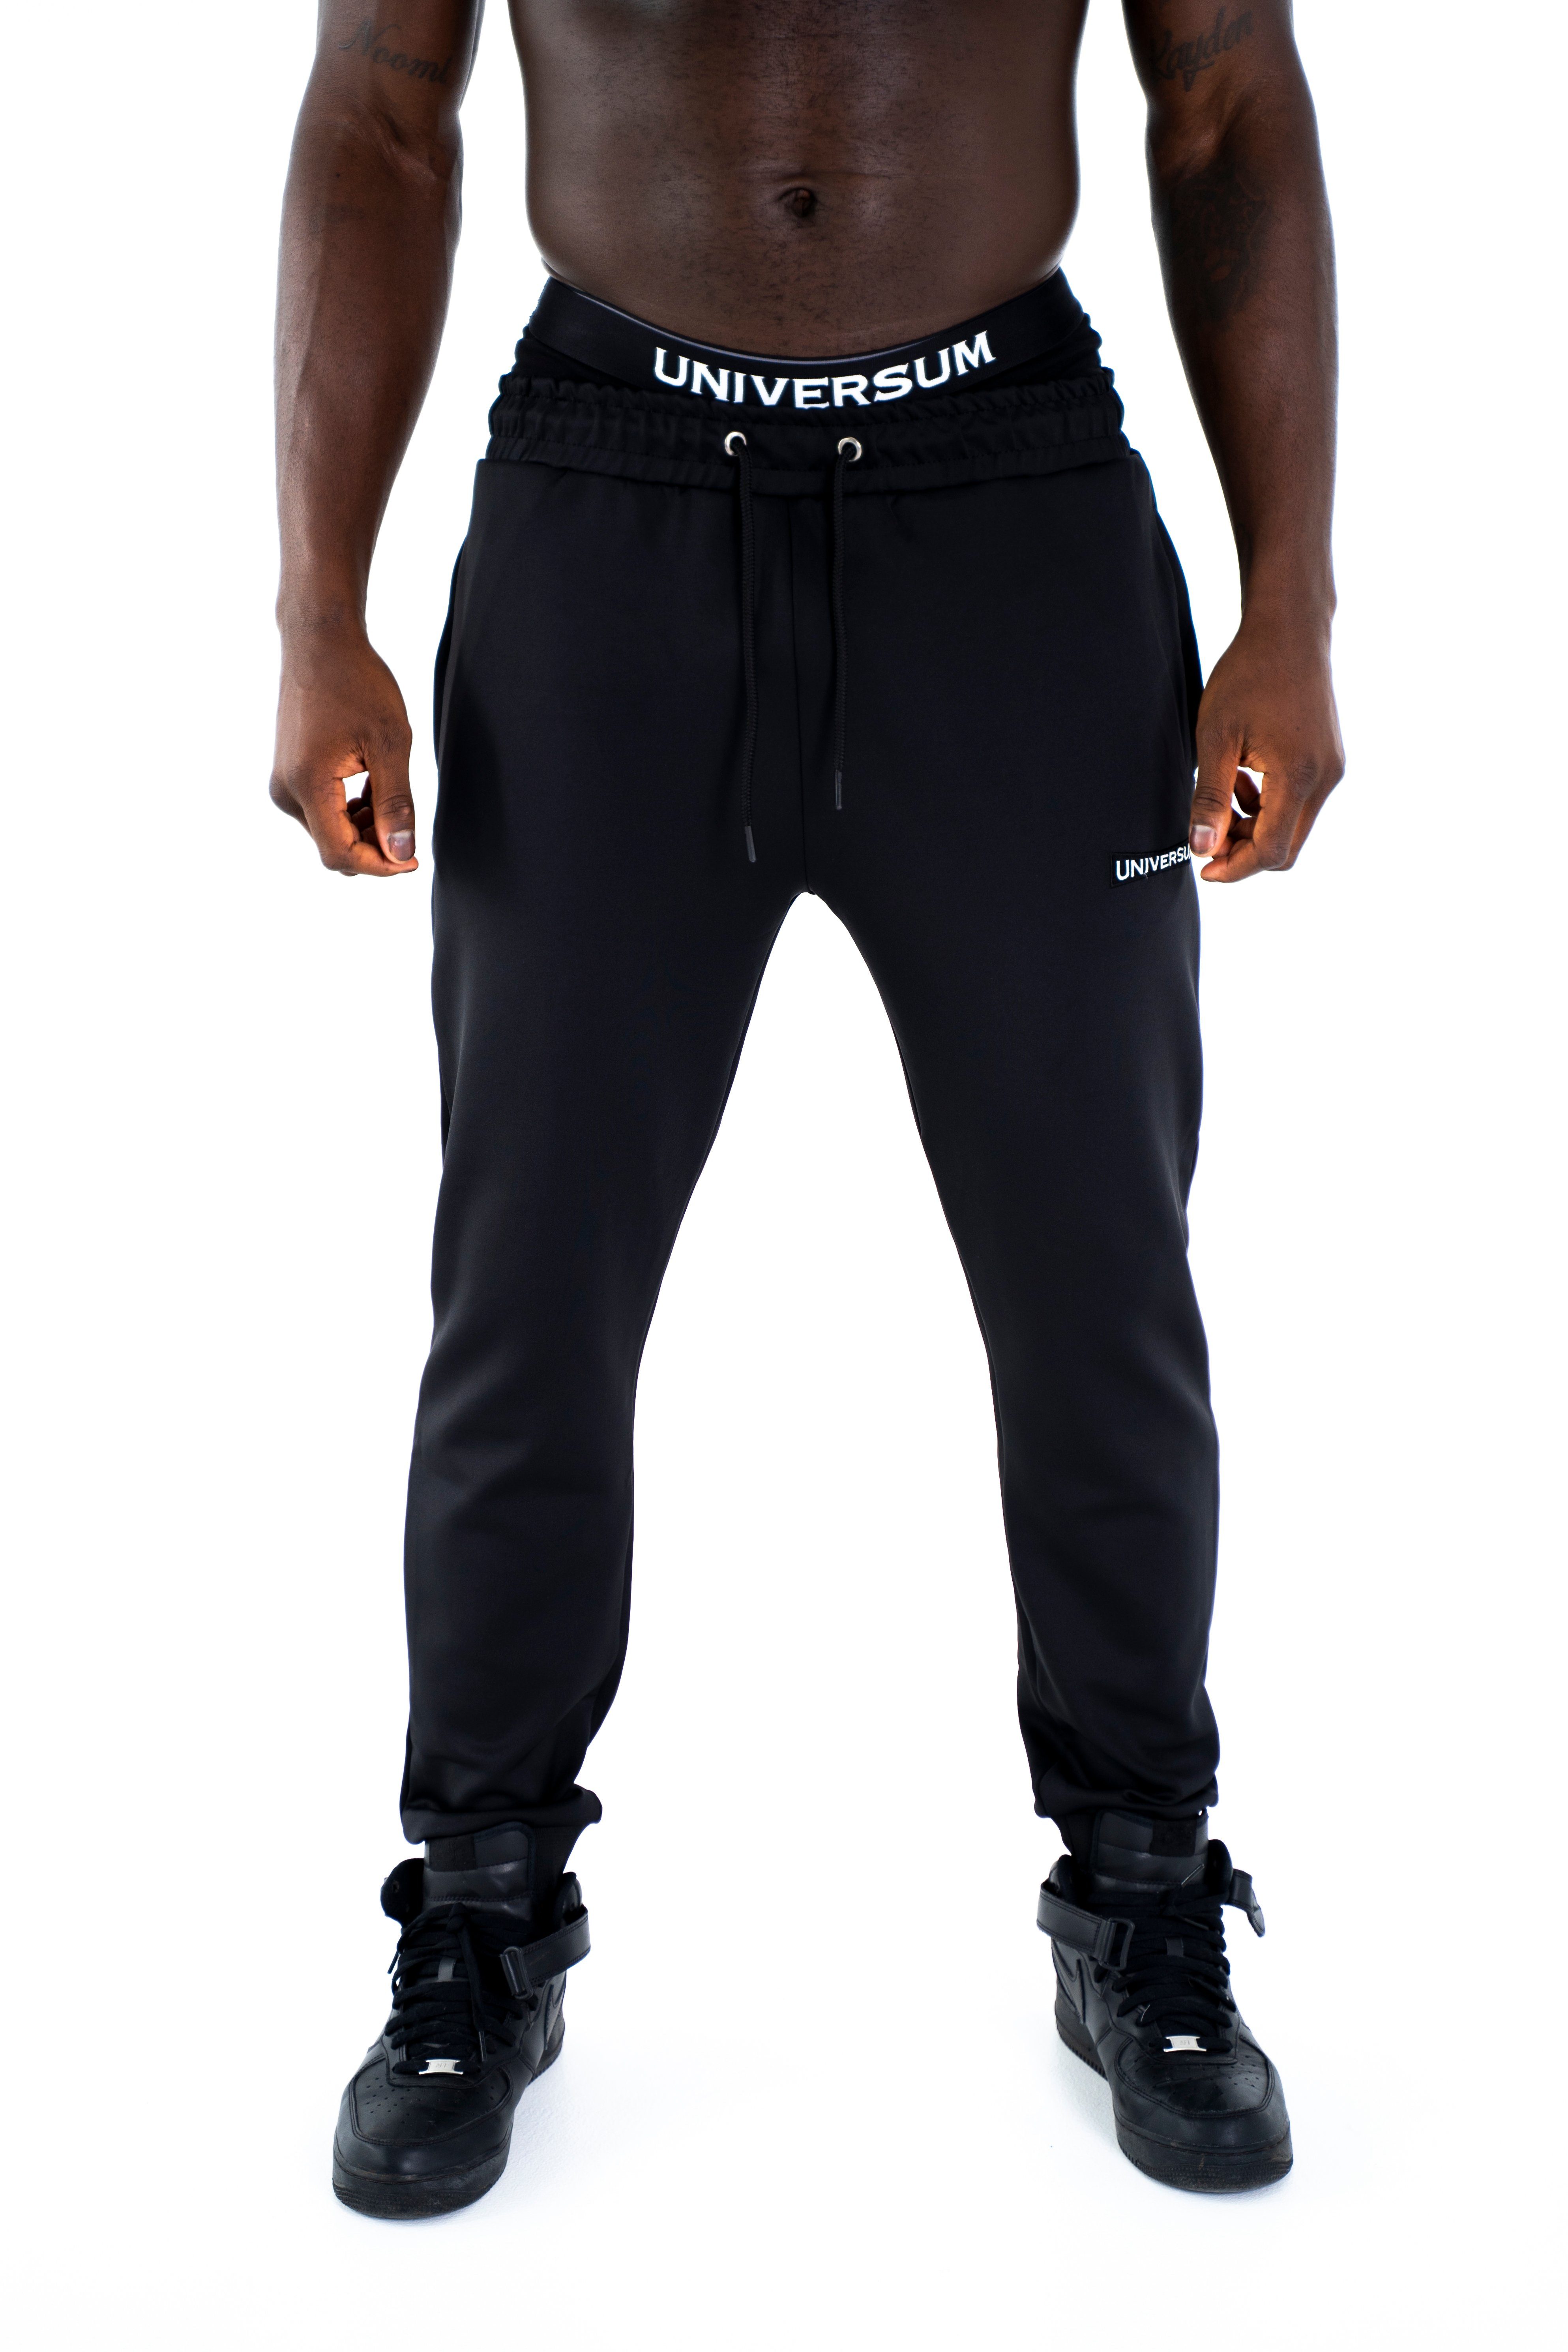 für Trainingsjacke Universum und Schulterschnitt, mit und Fit Sport, Fitness schwarz Freizeit Kapuze Sportwear Trainingsjacke Hoodie Modern